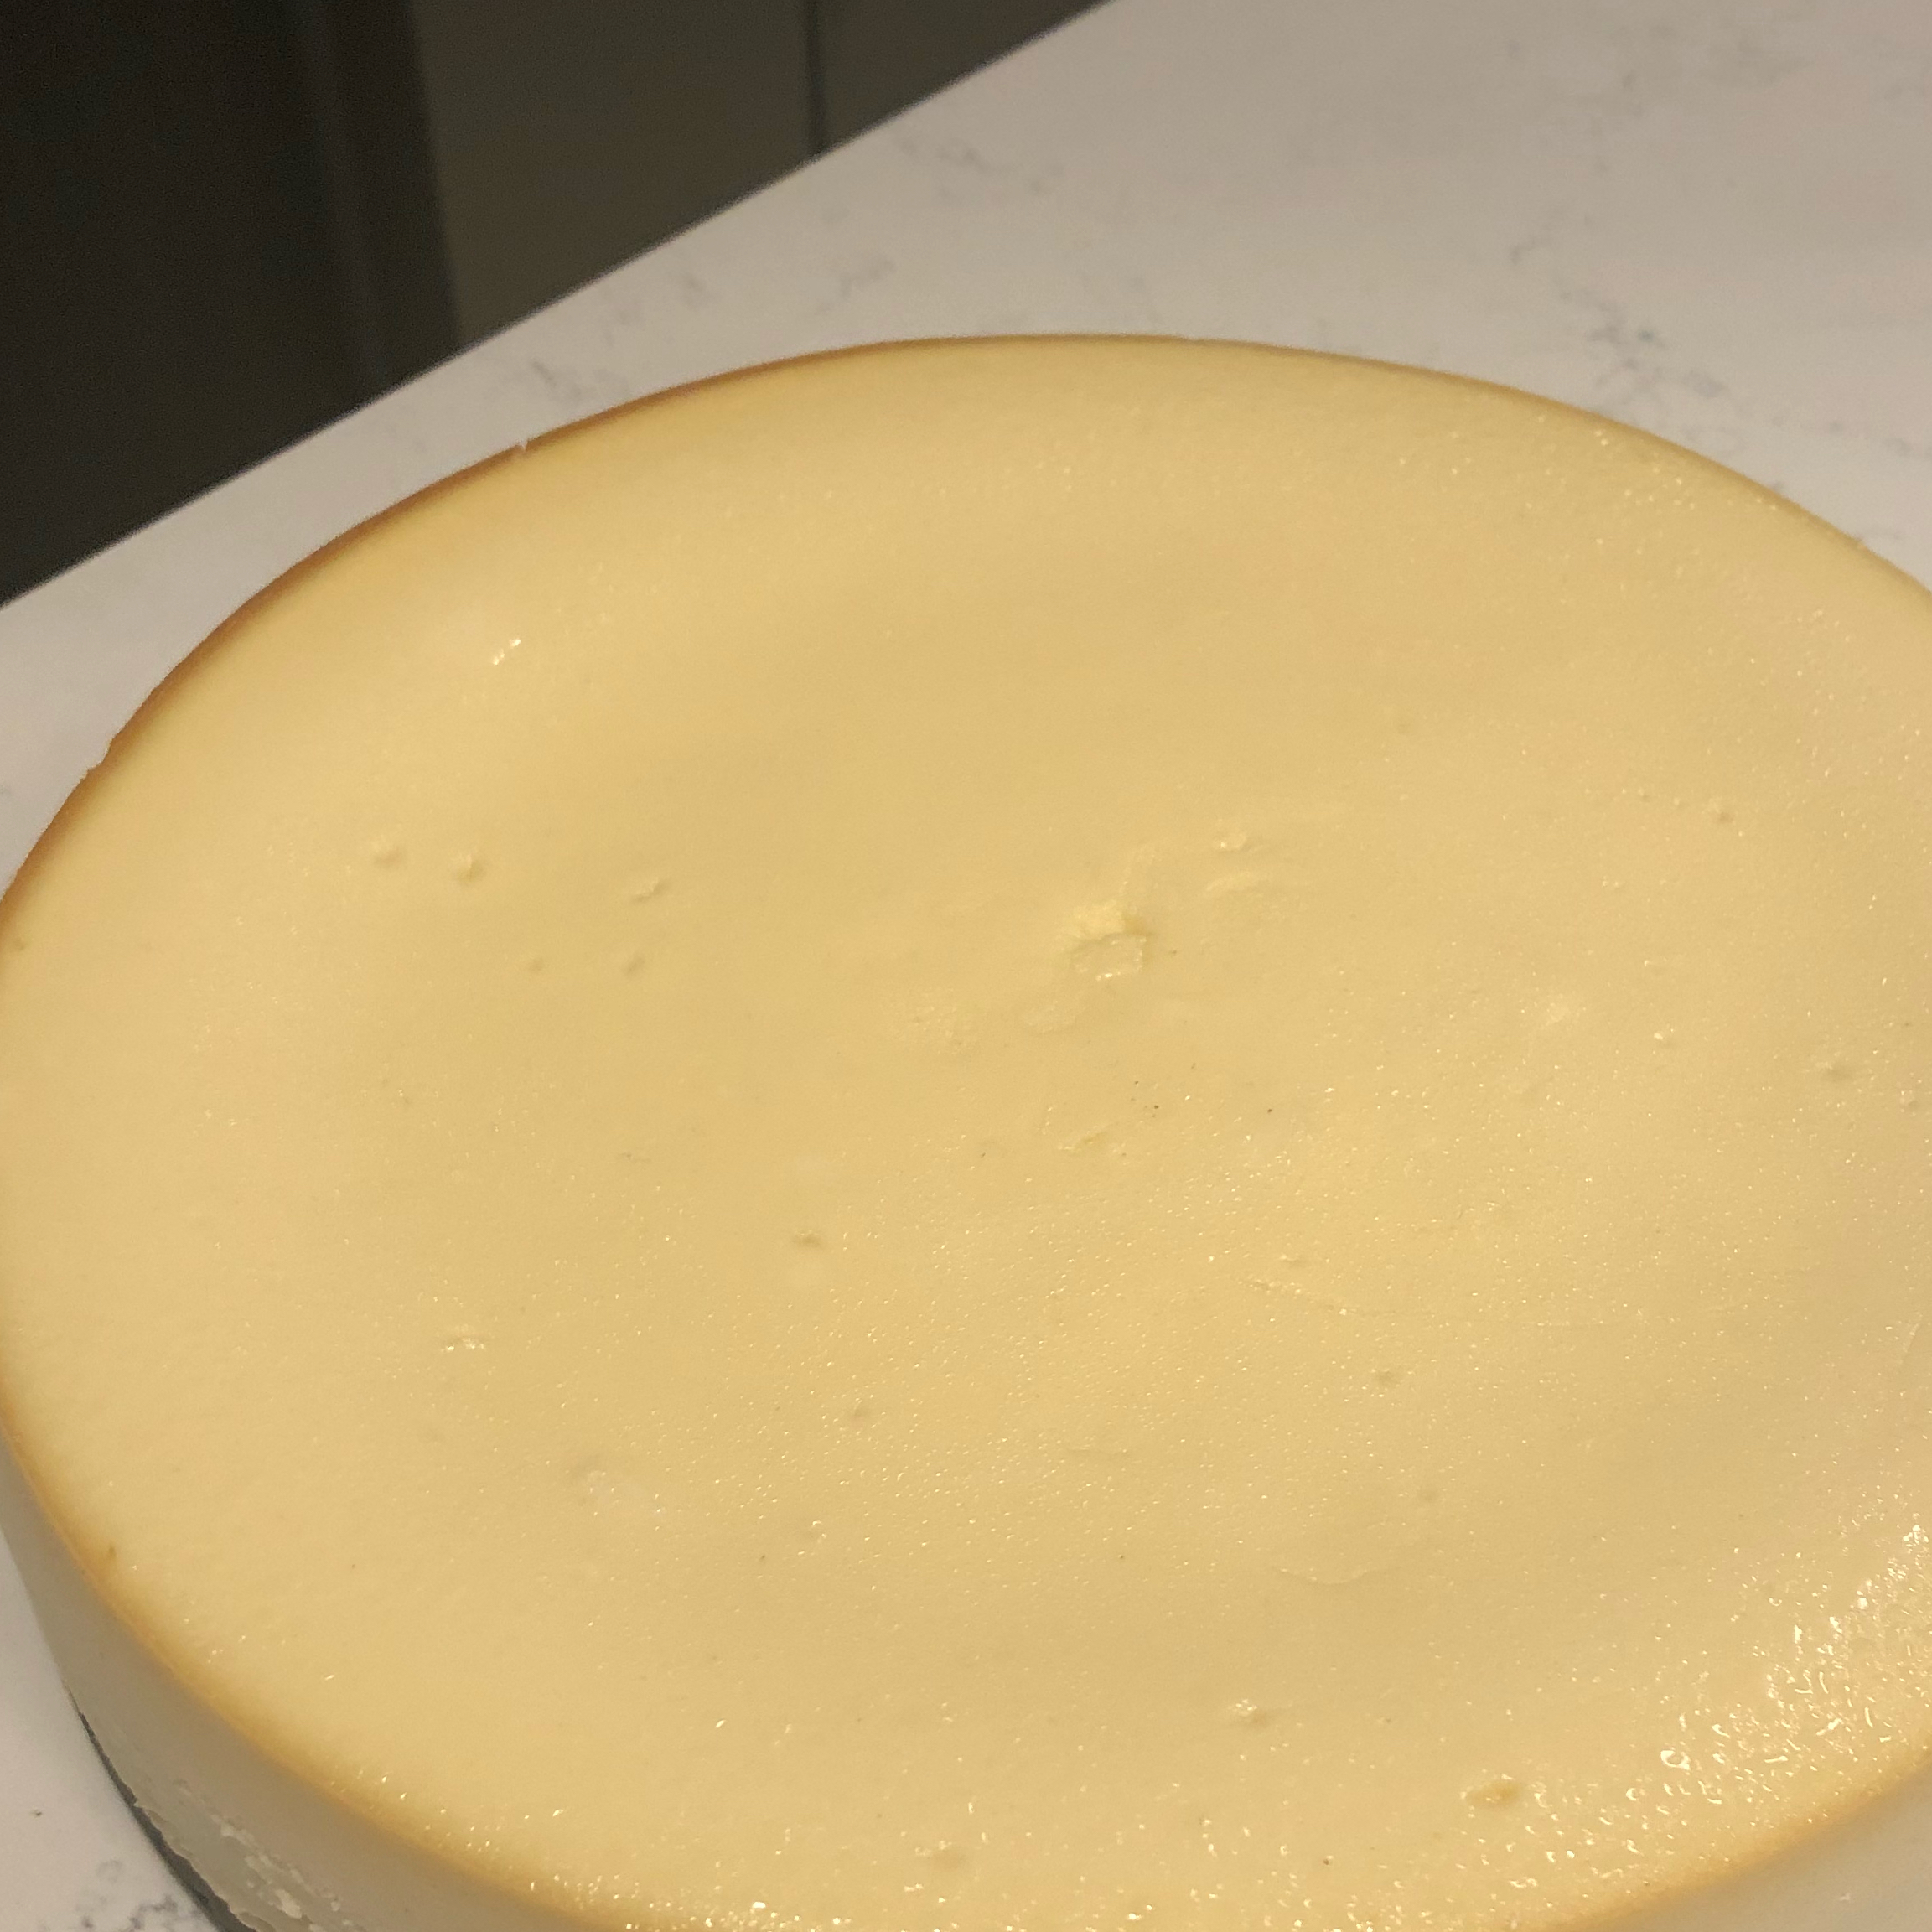 New York Italian Style Cheesecake